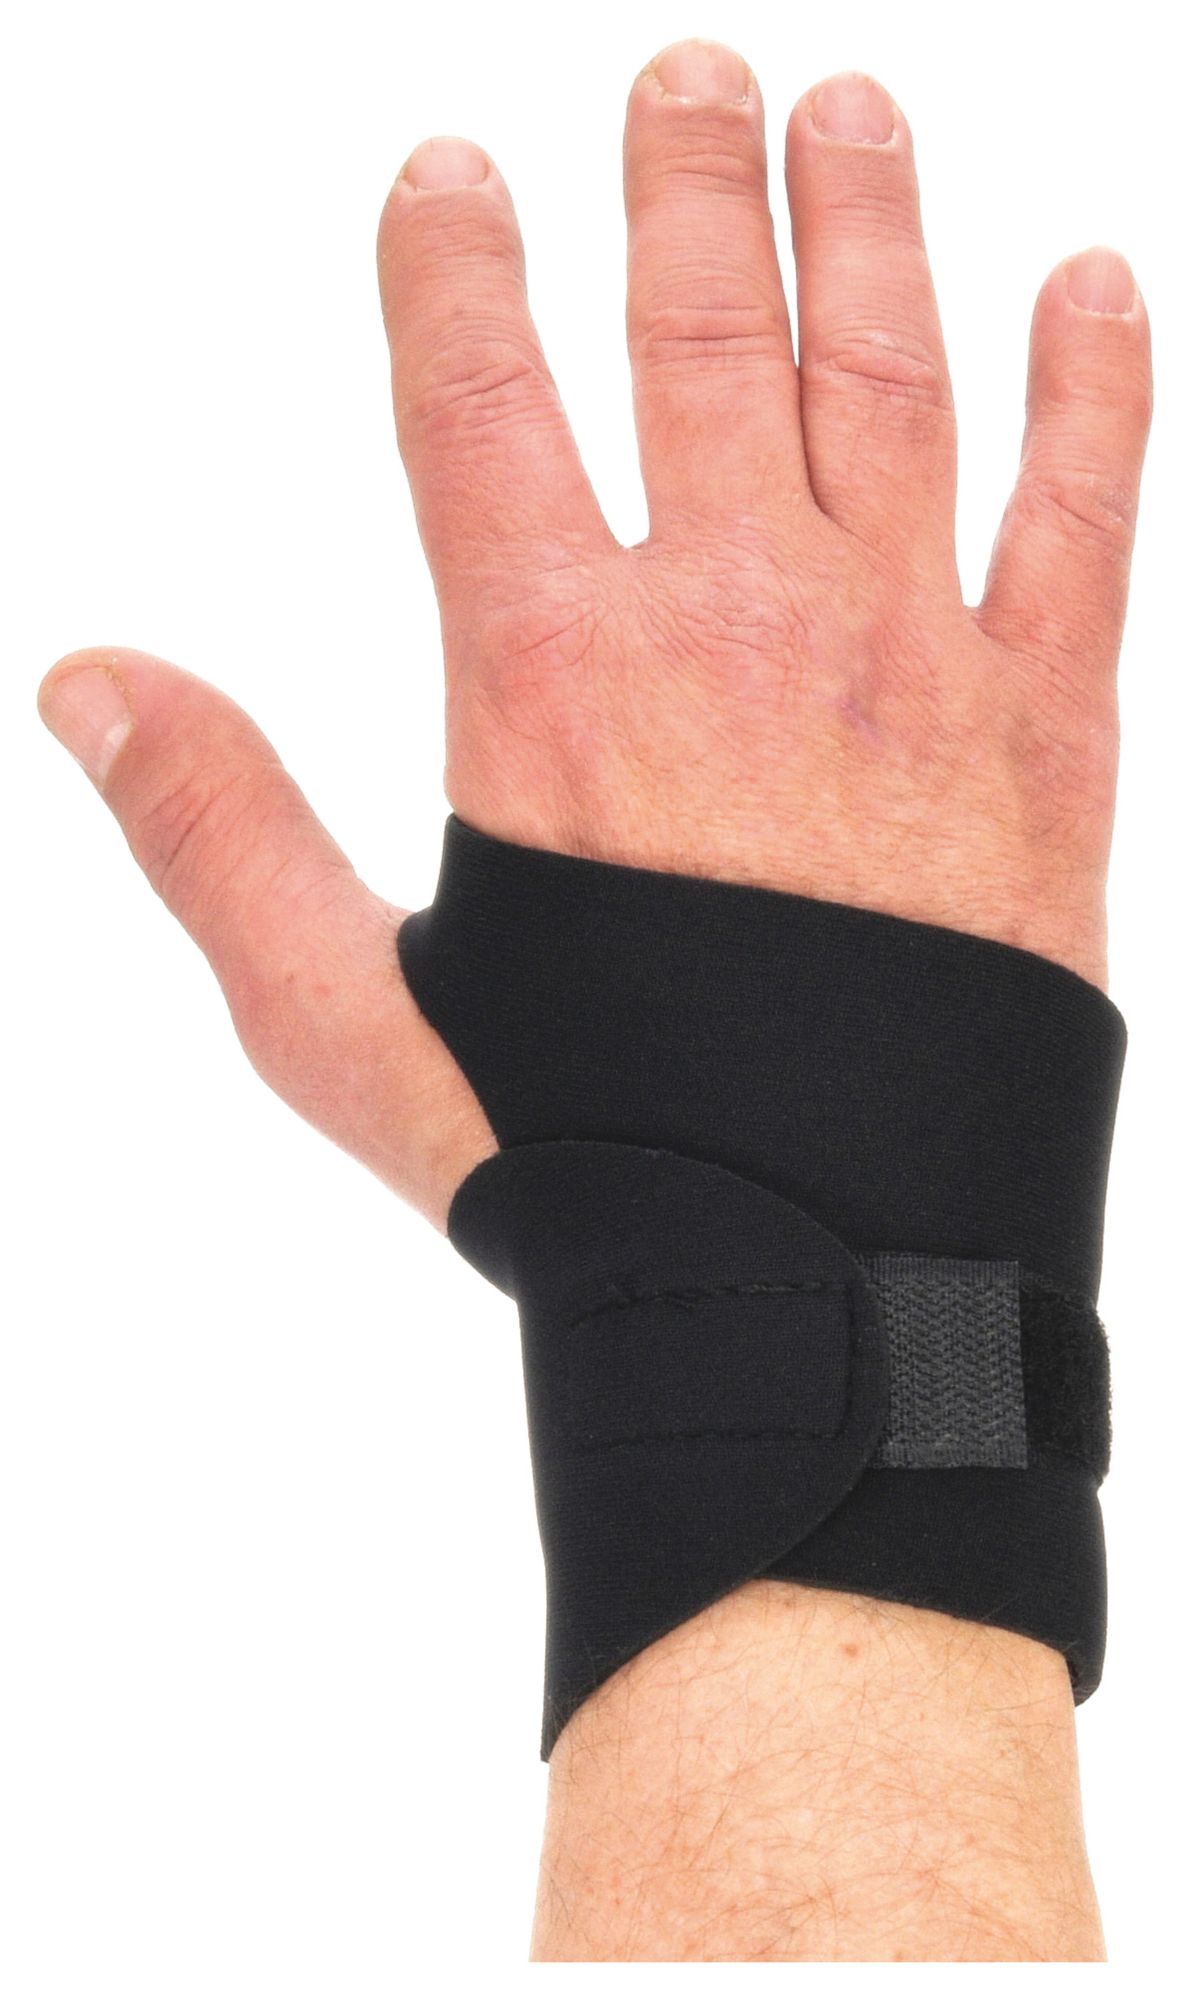 Ambidextrous Wrist Support Single Strap